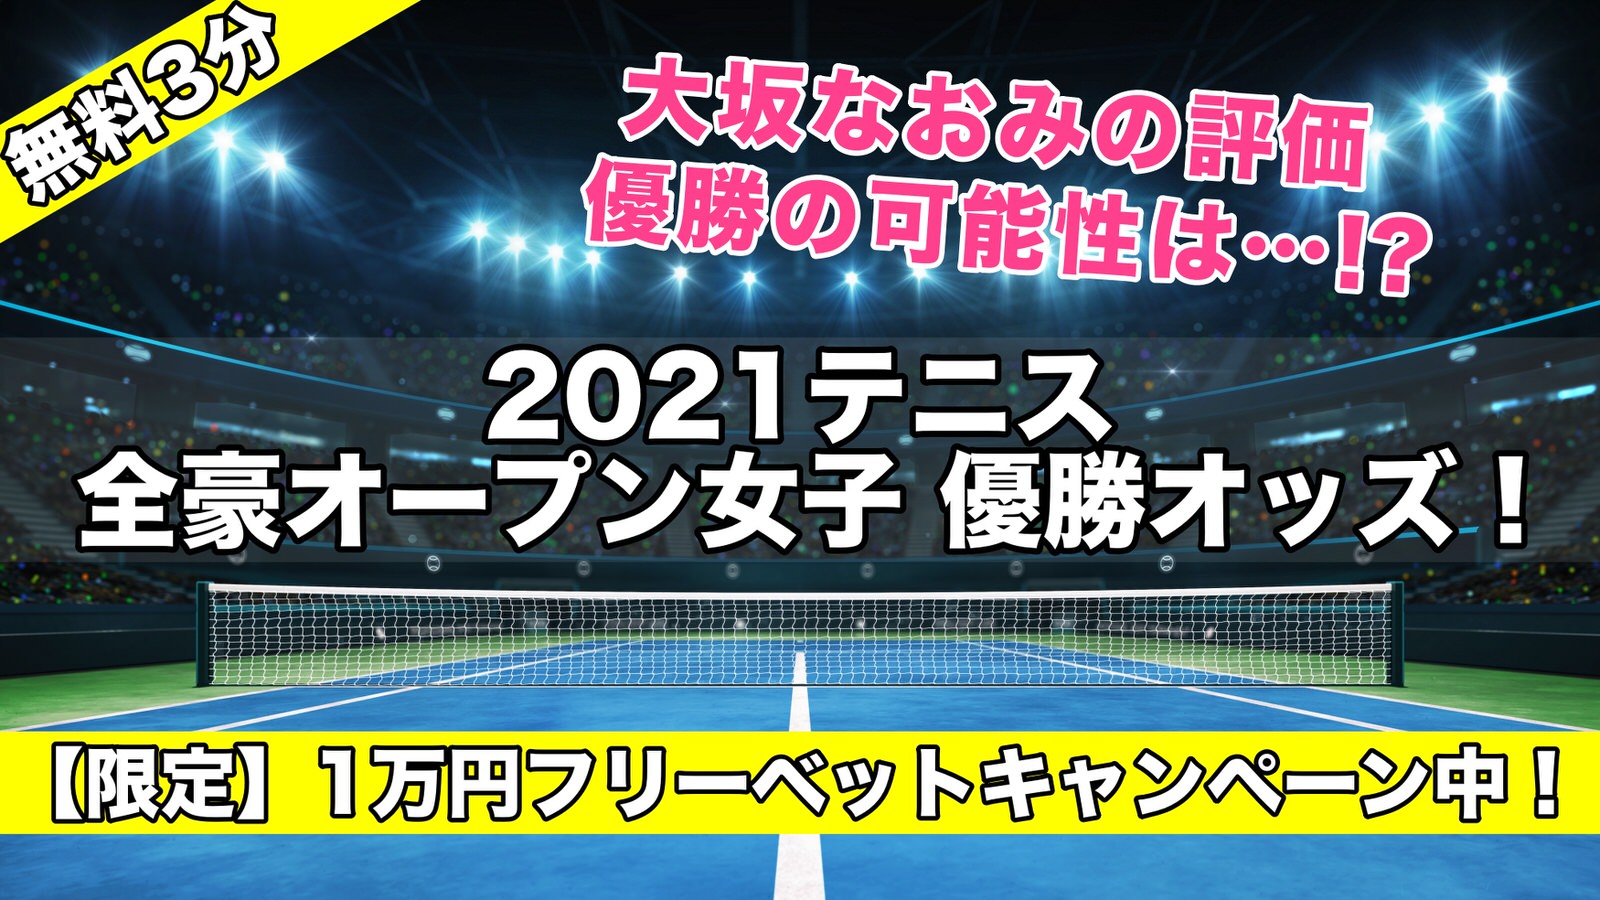 2021テニス全豪オープン女子優勝オッズ！大阪なおみ可能性は!?ベスト4進出決定